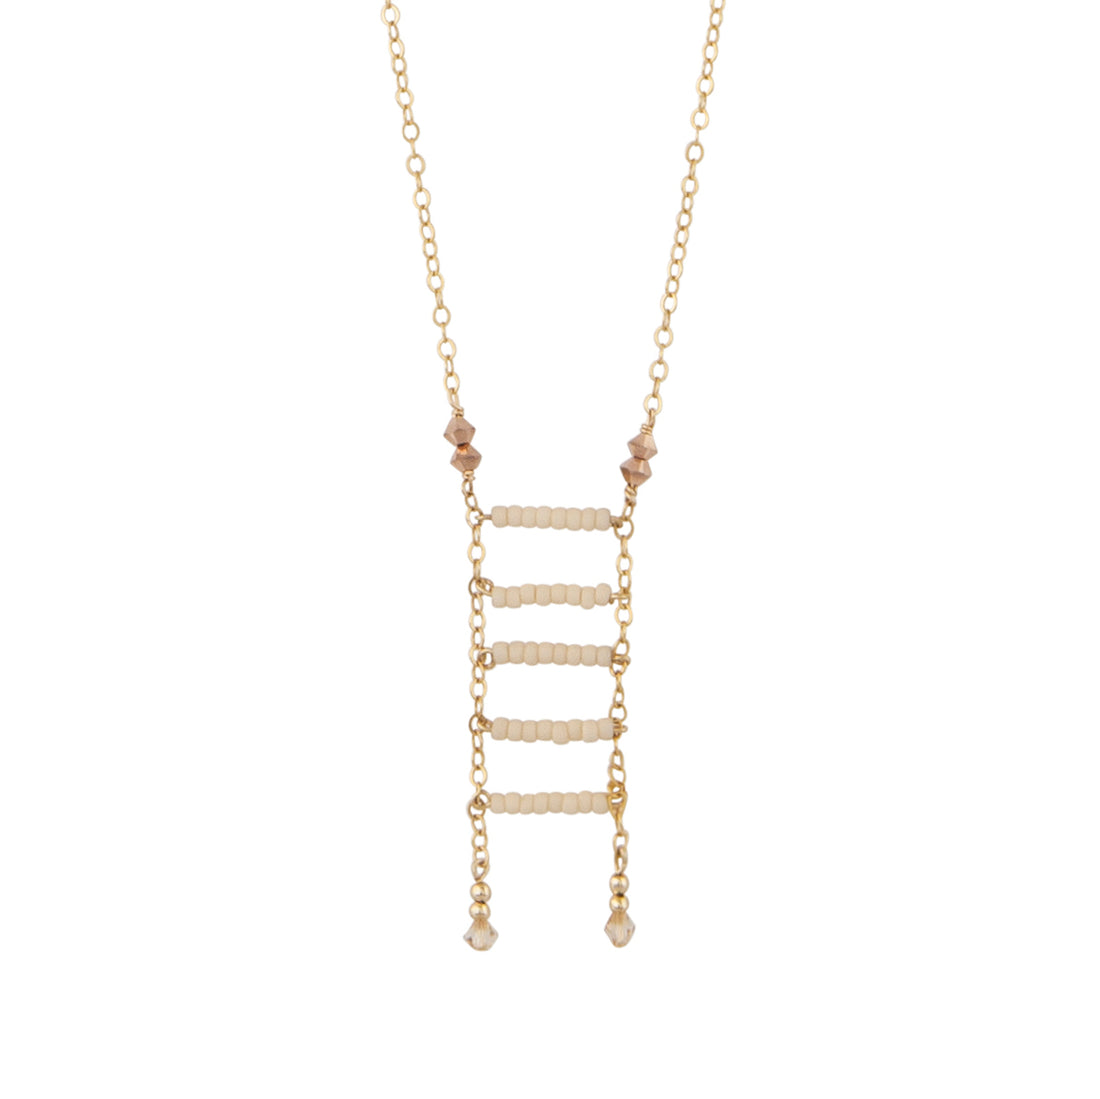 Ladder Pendant Necklace - PINK/HONEY/ROSE GOLD